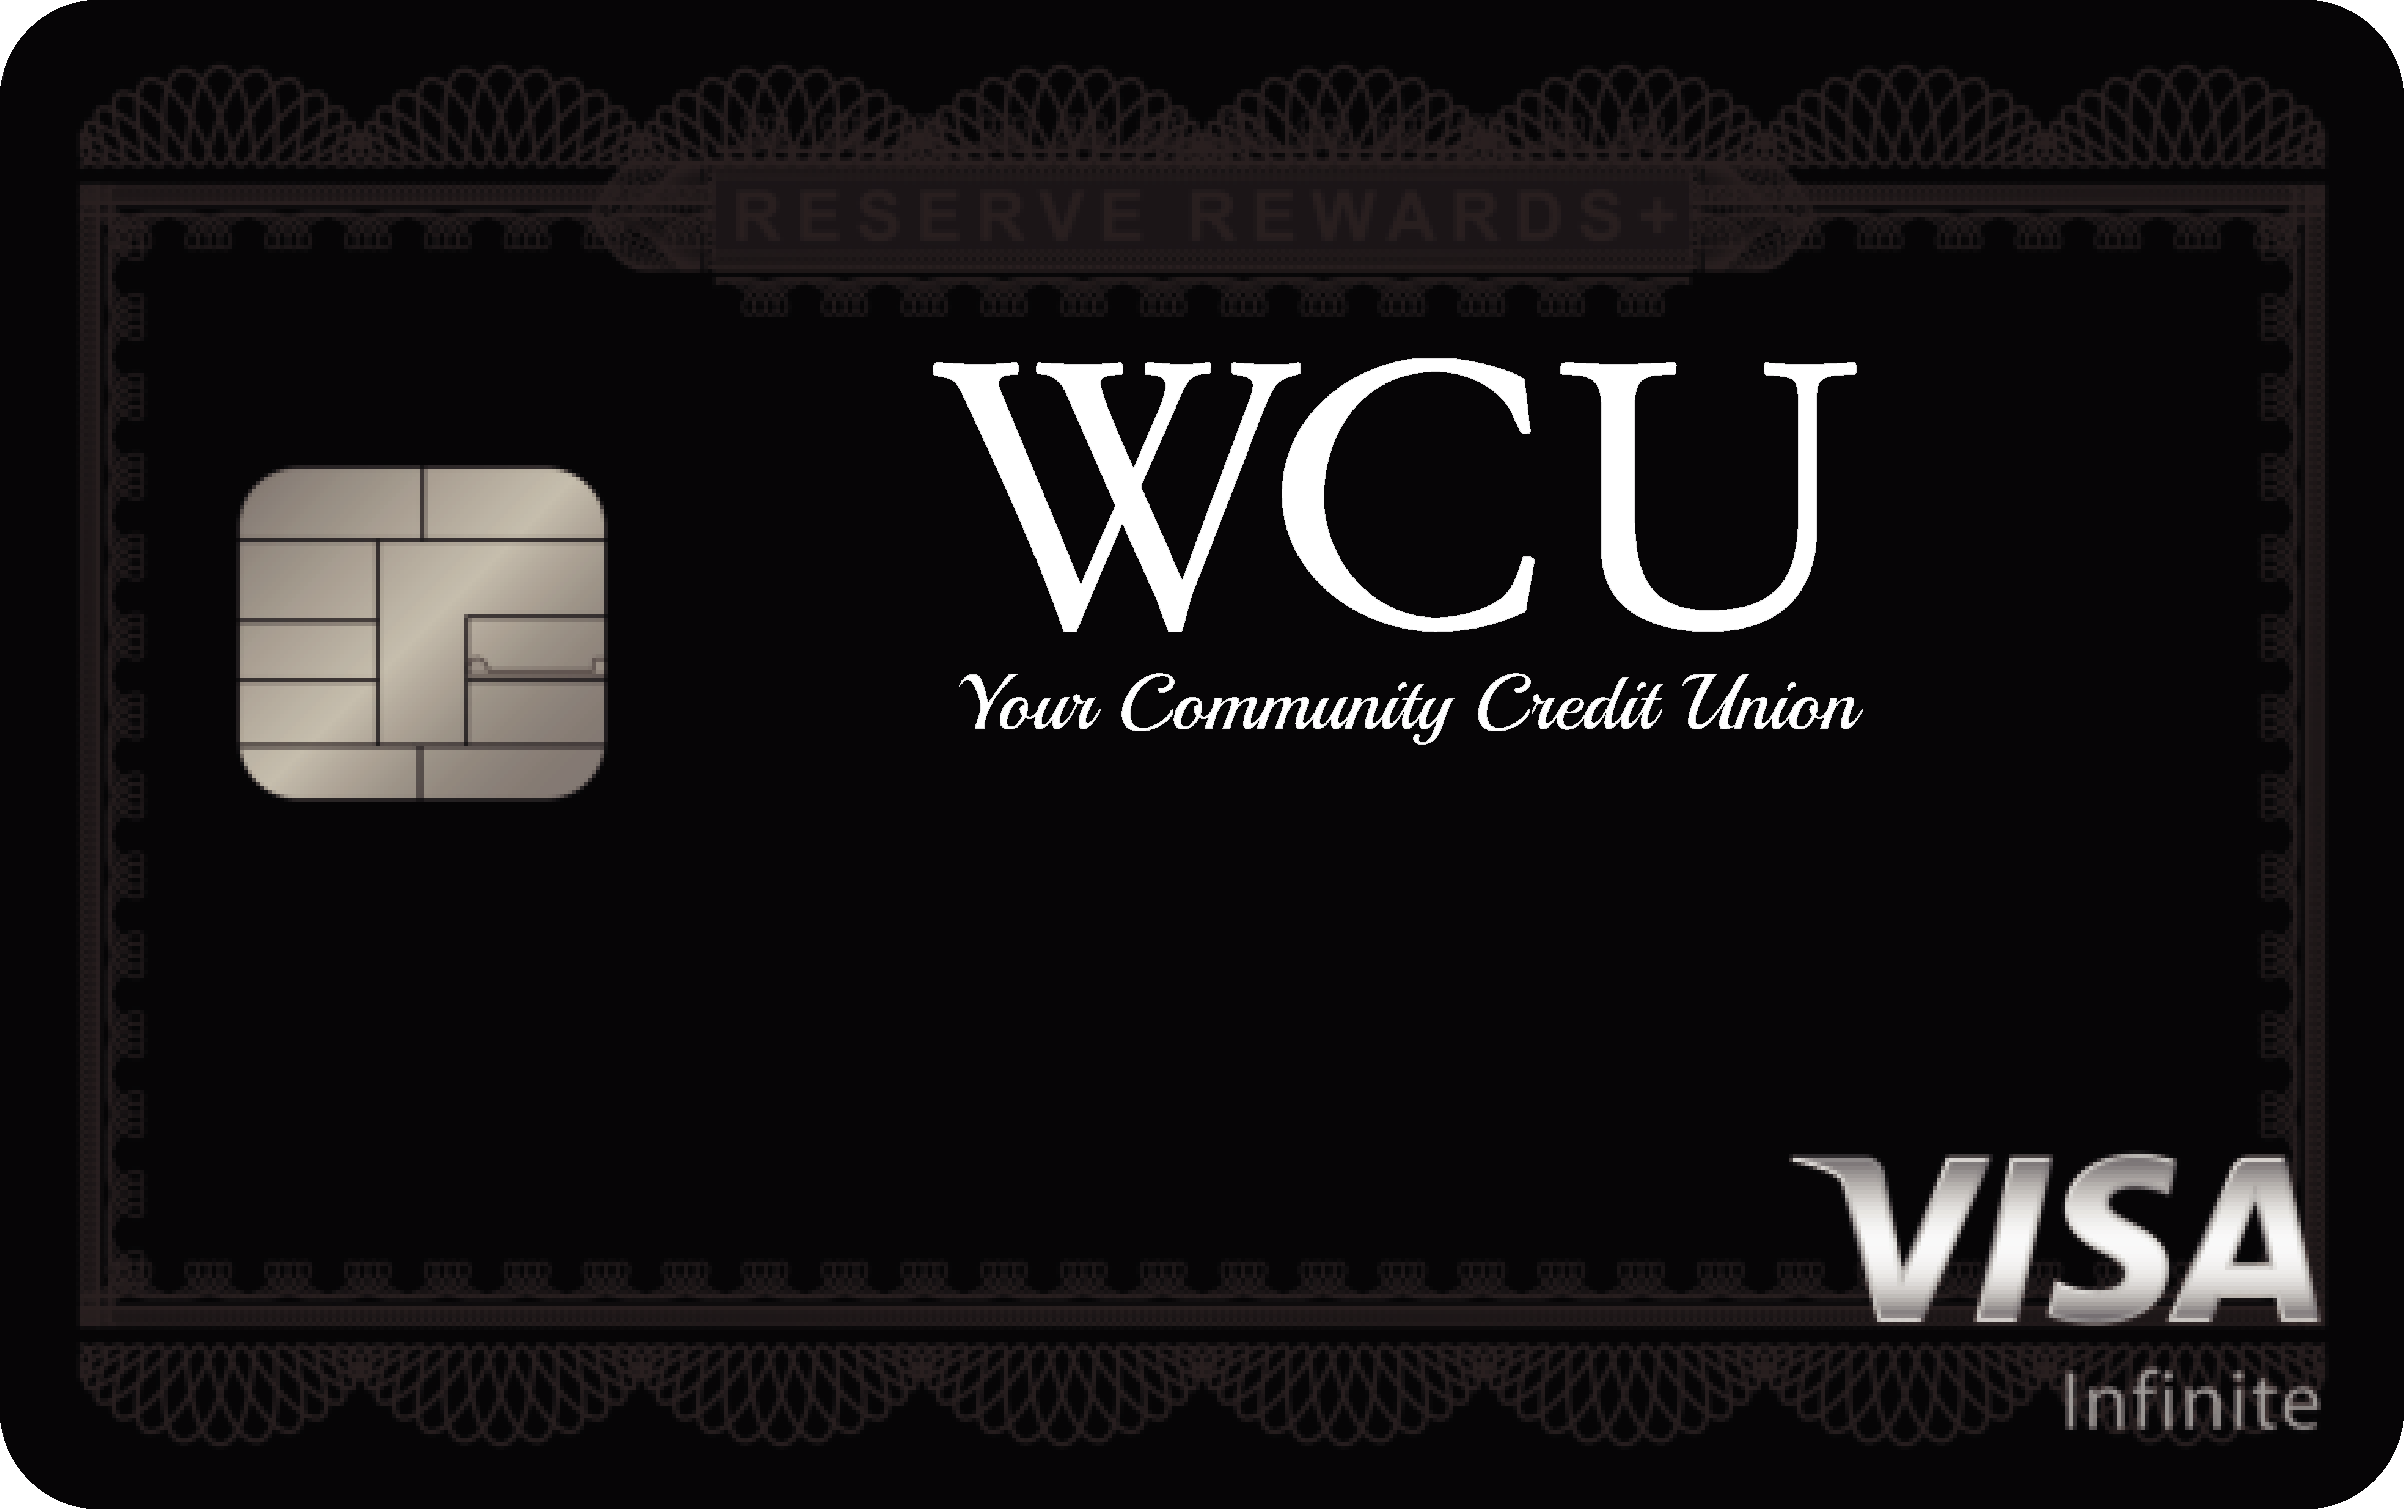 WCU Credit Union